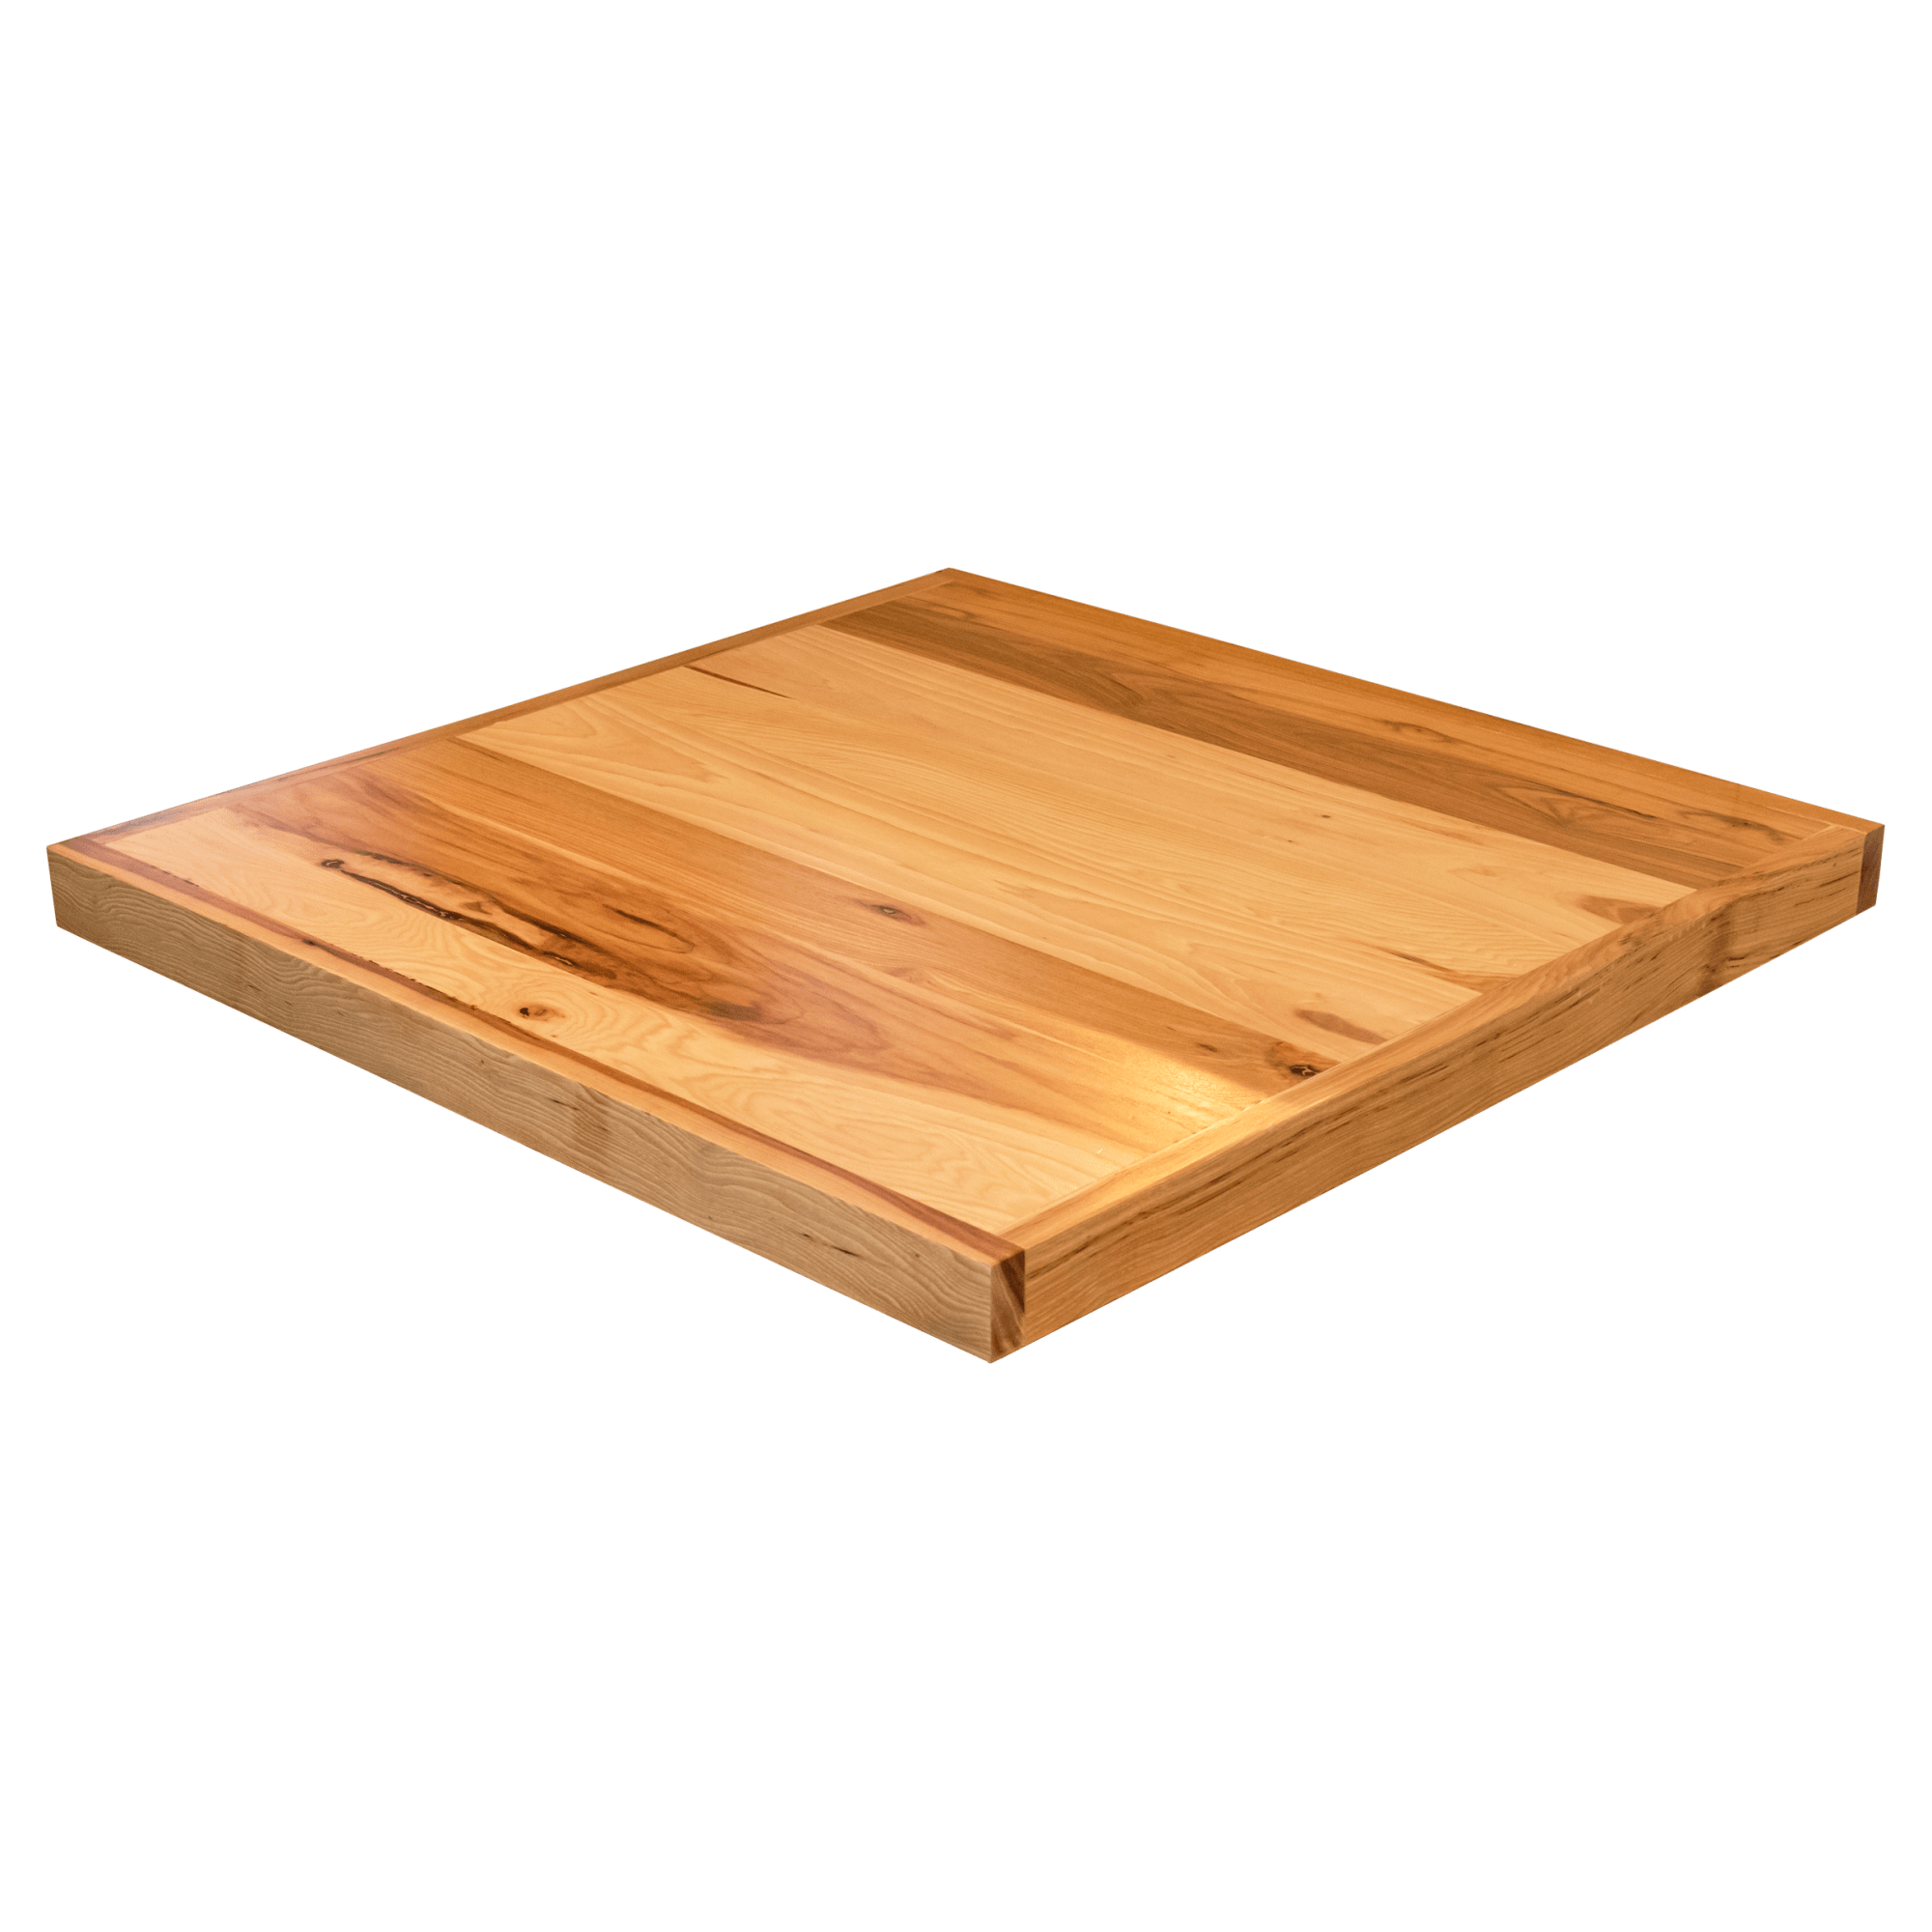 Industrial Series Reclaimed Look Wood Table Top with Drop Edge with Industrial Series Reclaimed Look Wood Table Top with Drop Edge